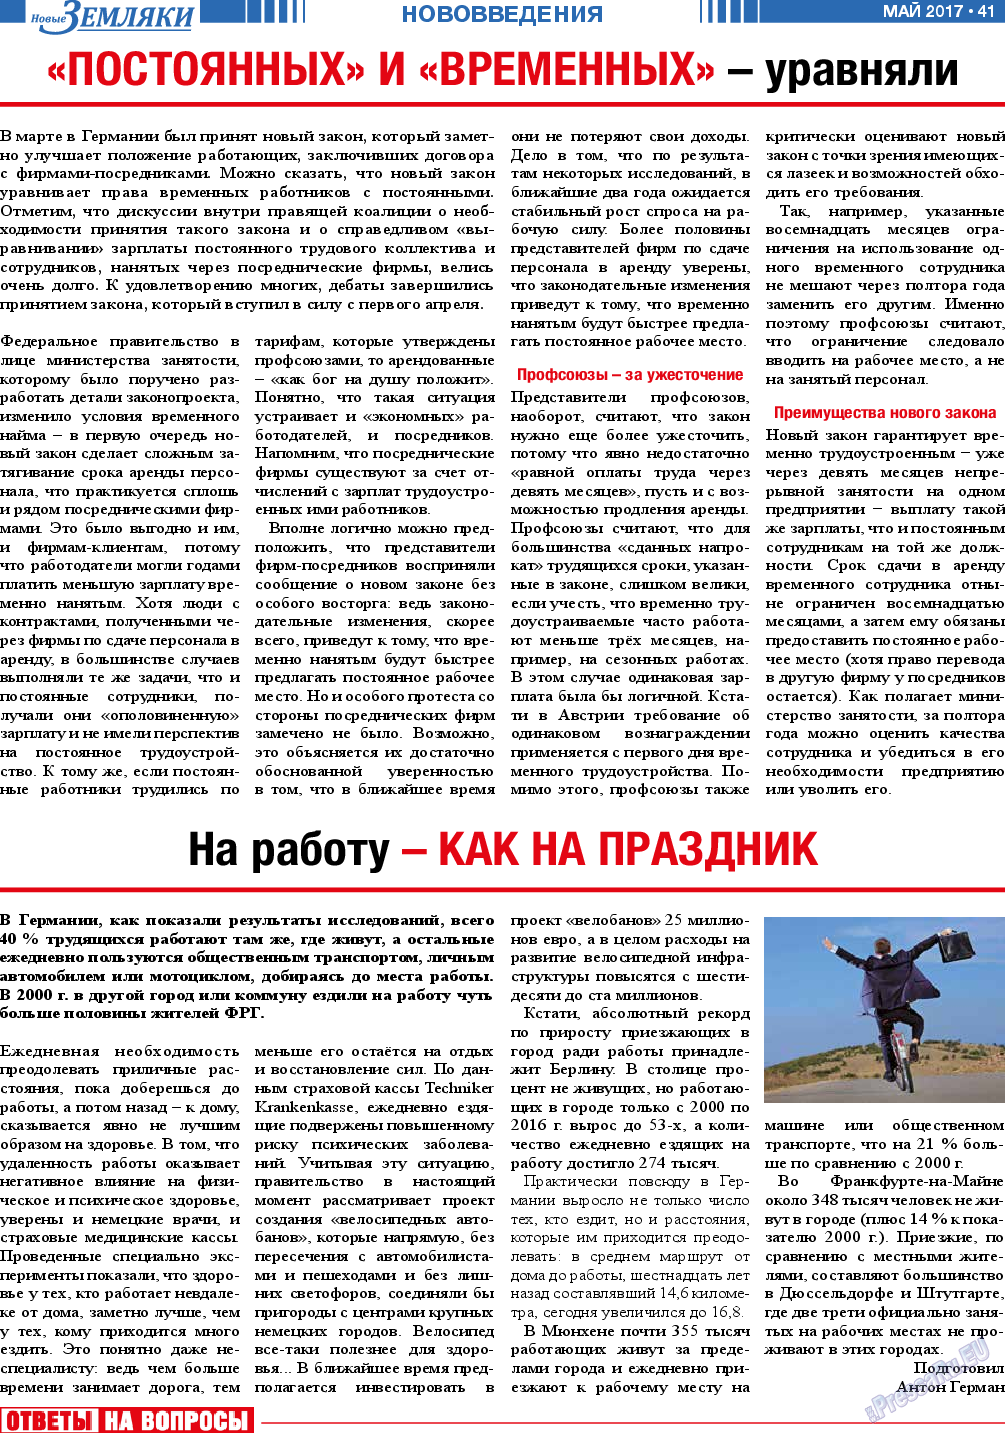 Новые Земляки (газета). 2017 год, номер 5, стр. 41